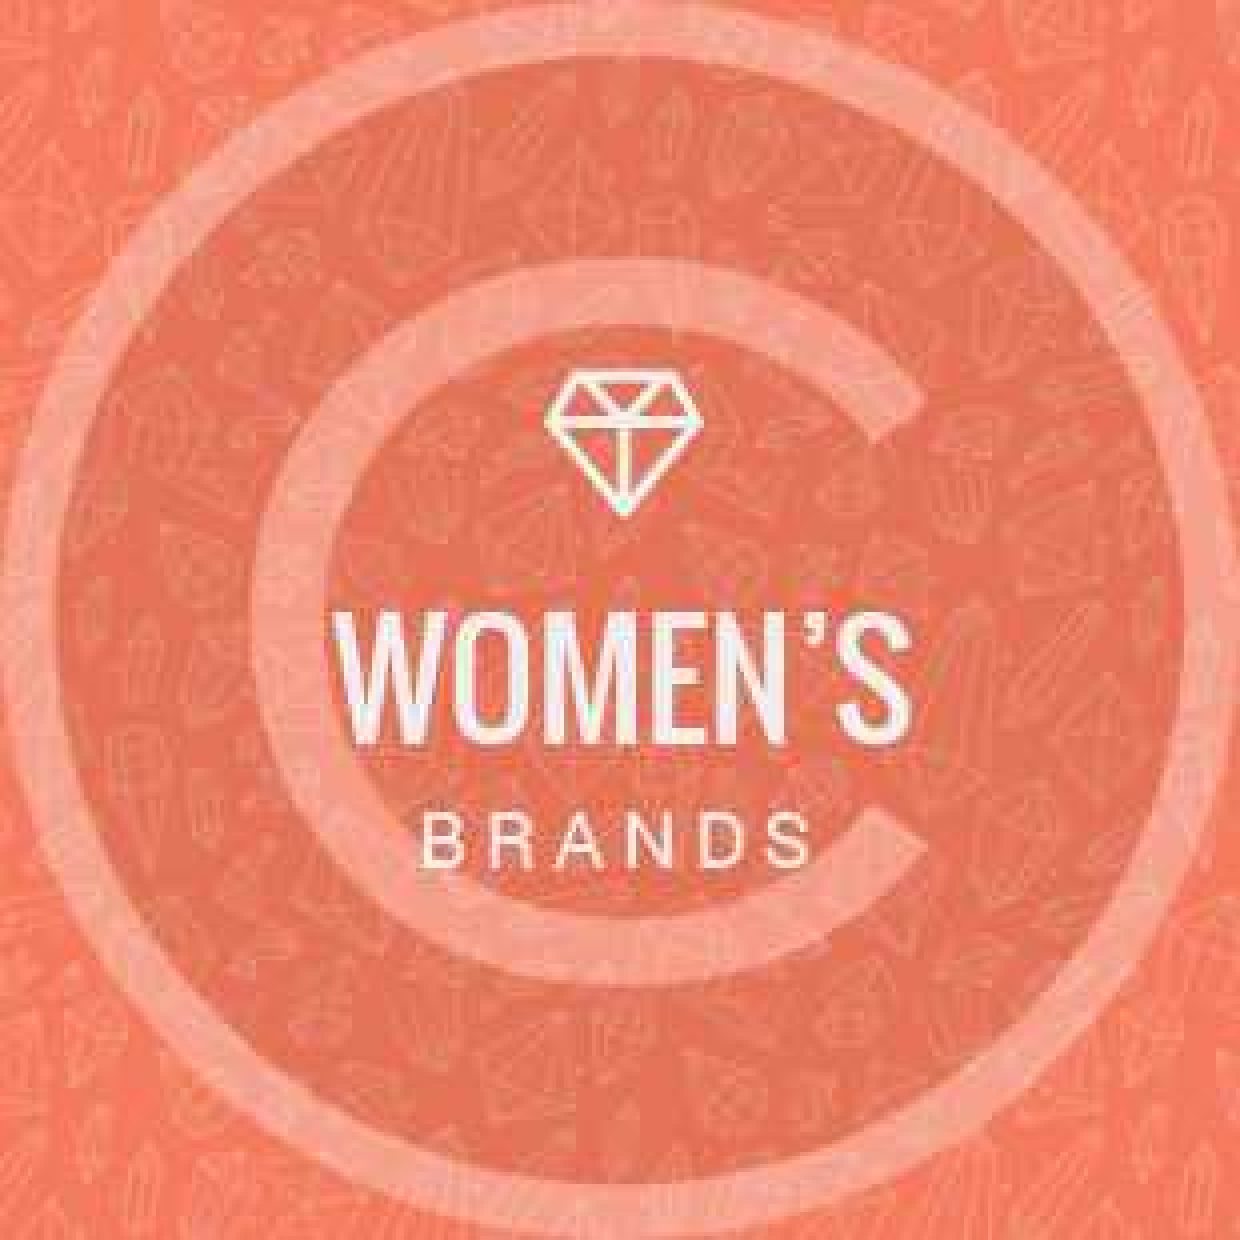 Women’s brands